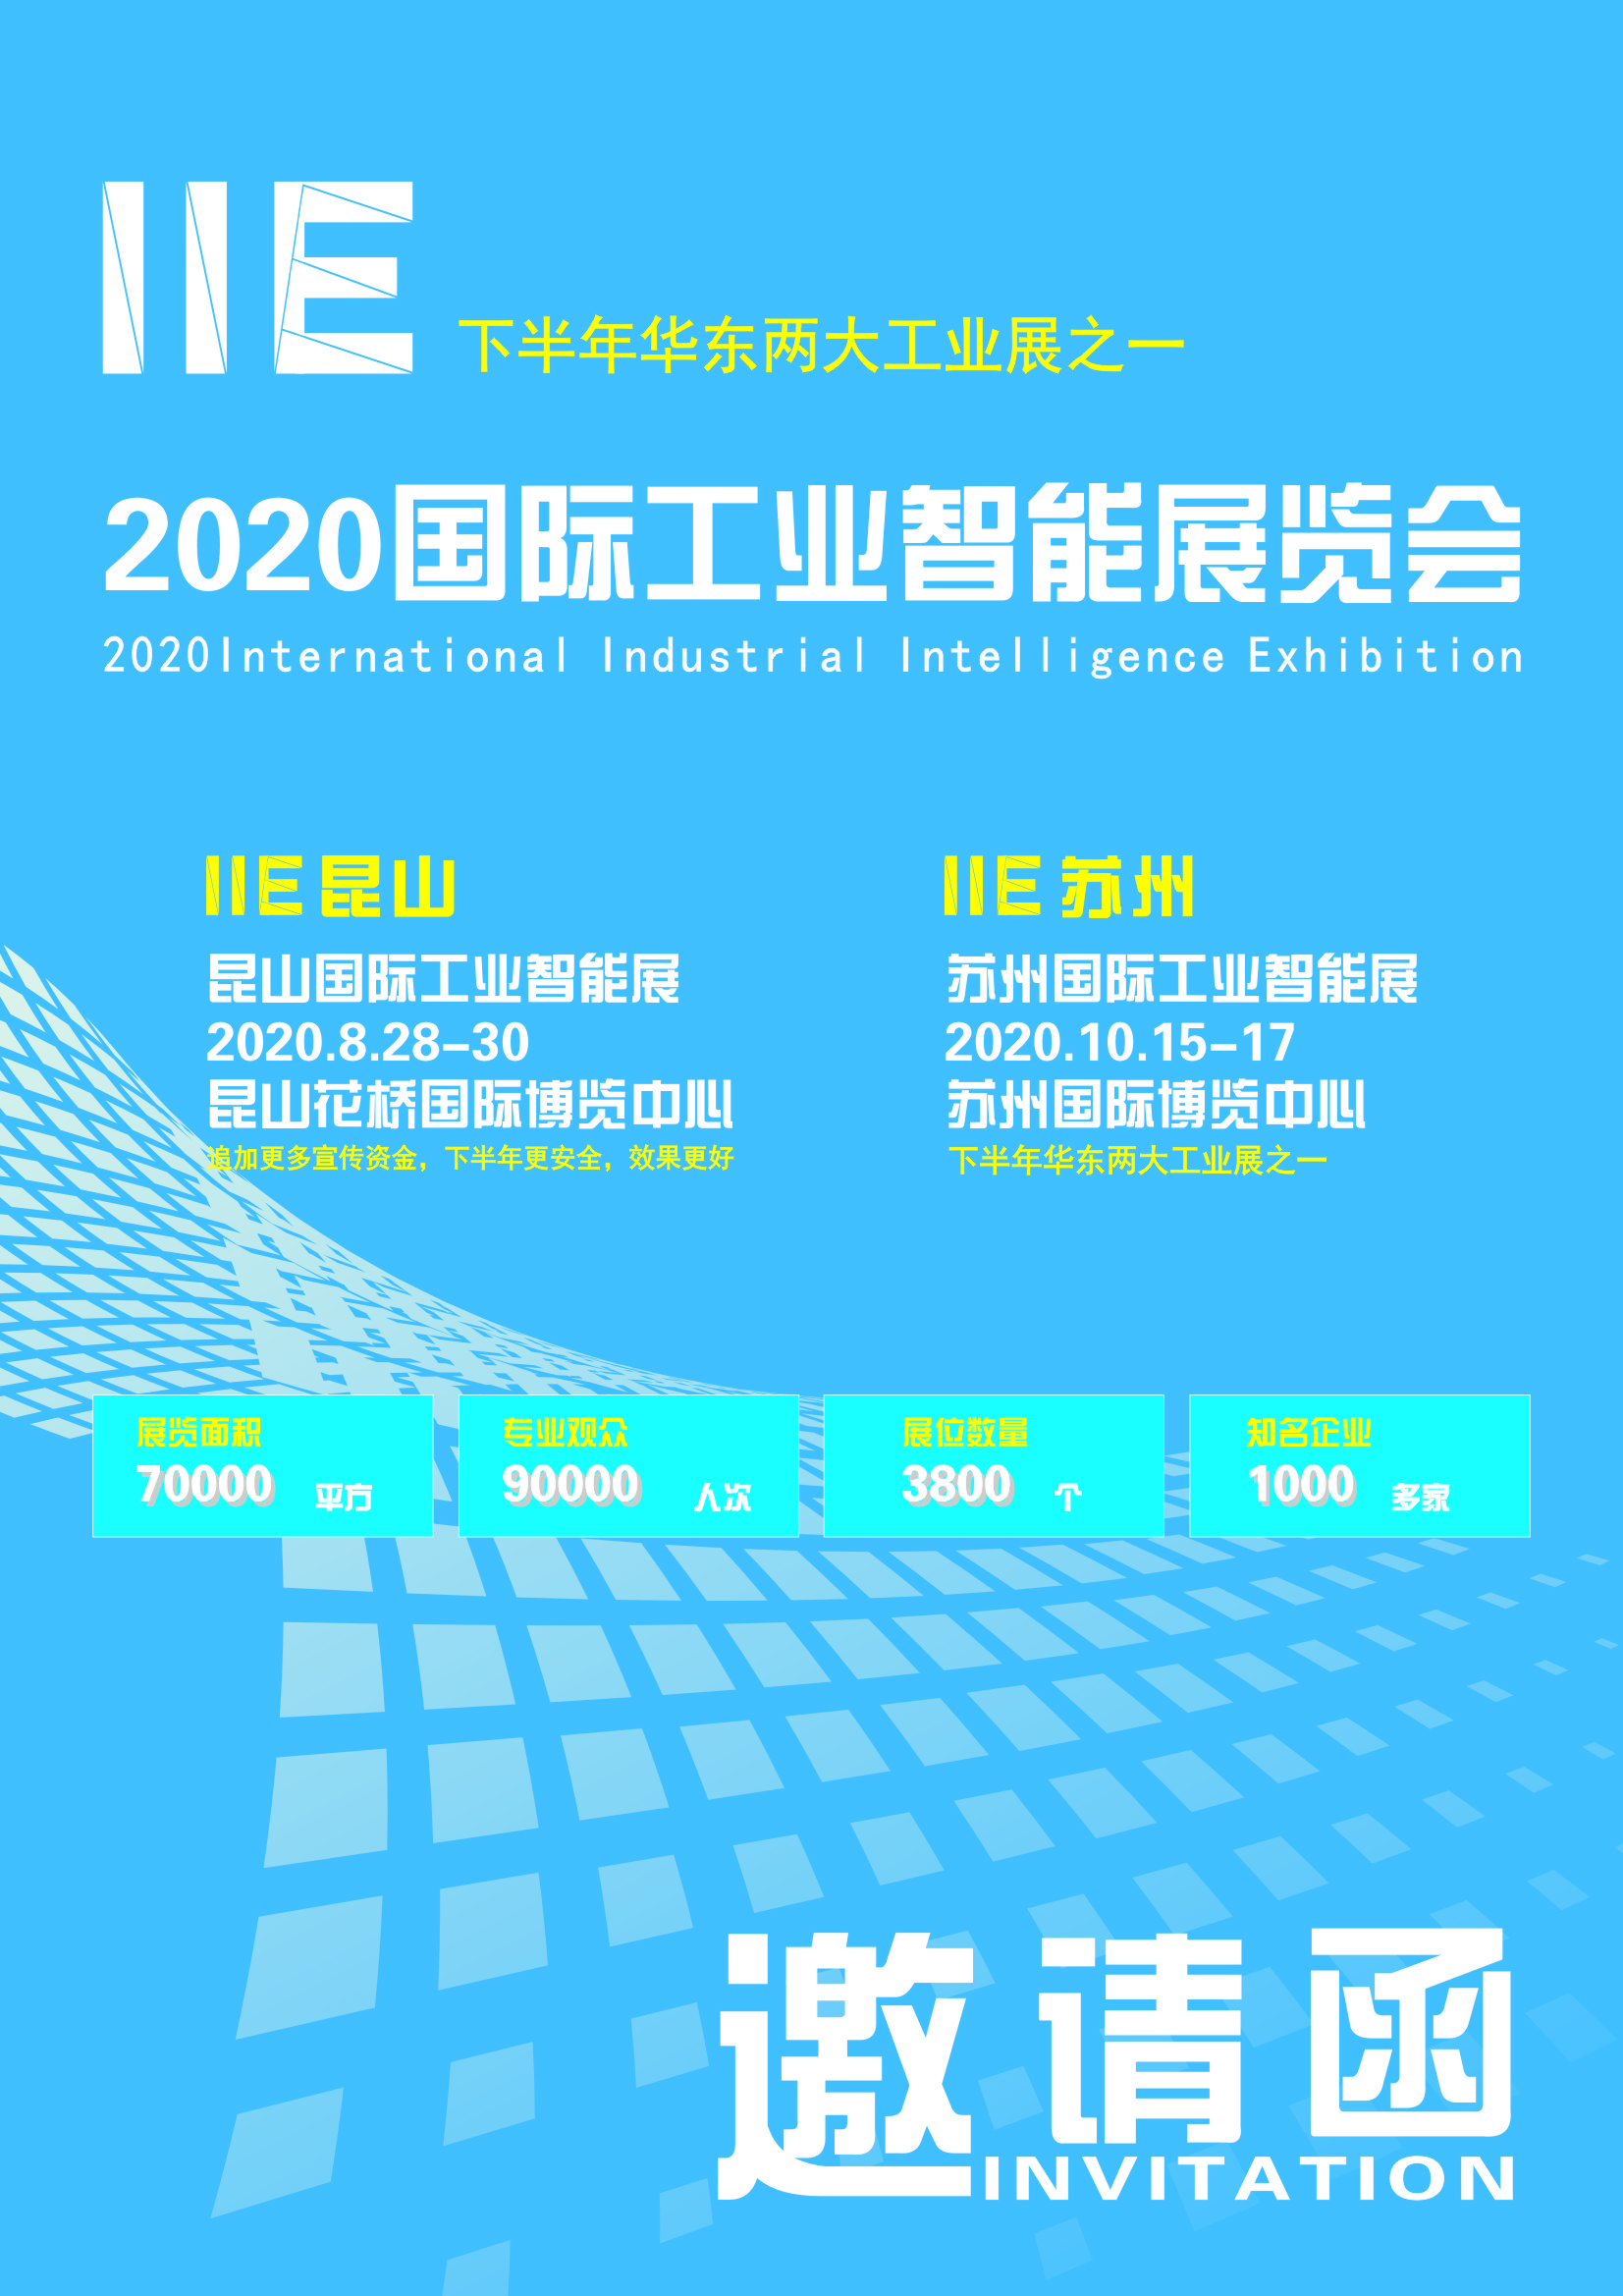 2020IIE工业智能展1.jpg